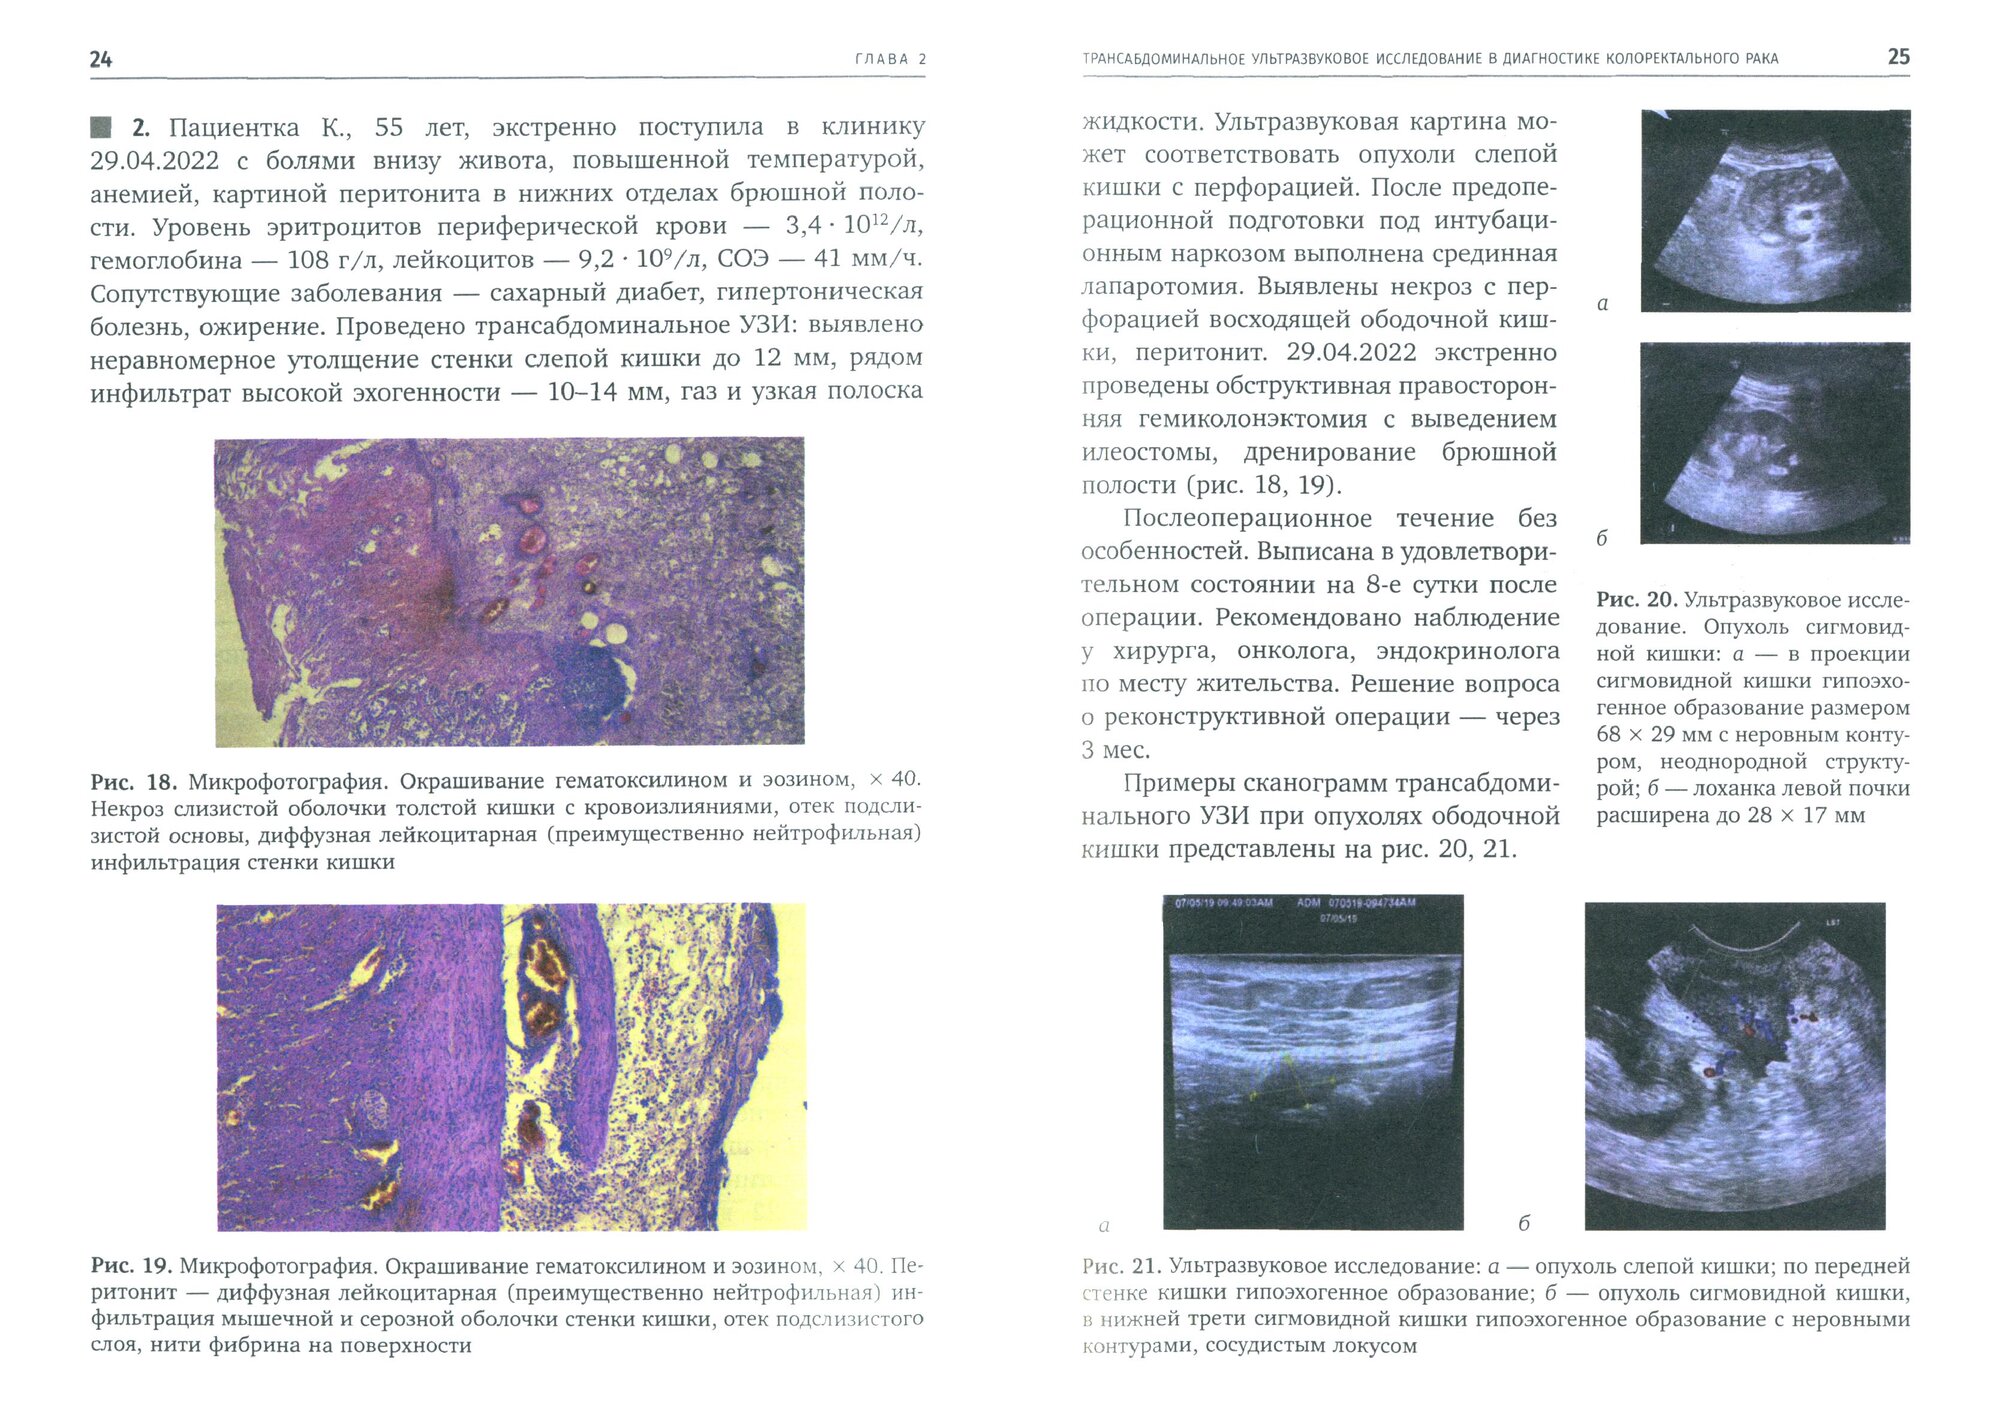 Трансабдоминальное ультразвуковое исследование в диагностике дивертикулярной болезни ободочной кишки - фото №3